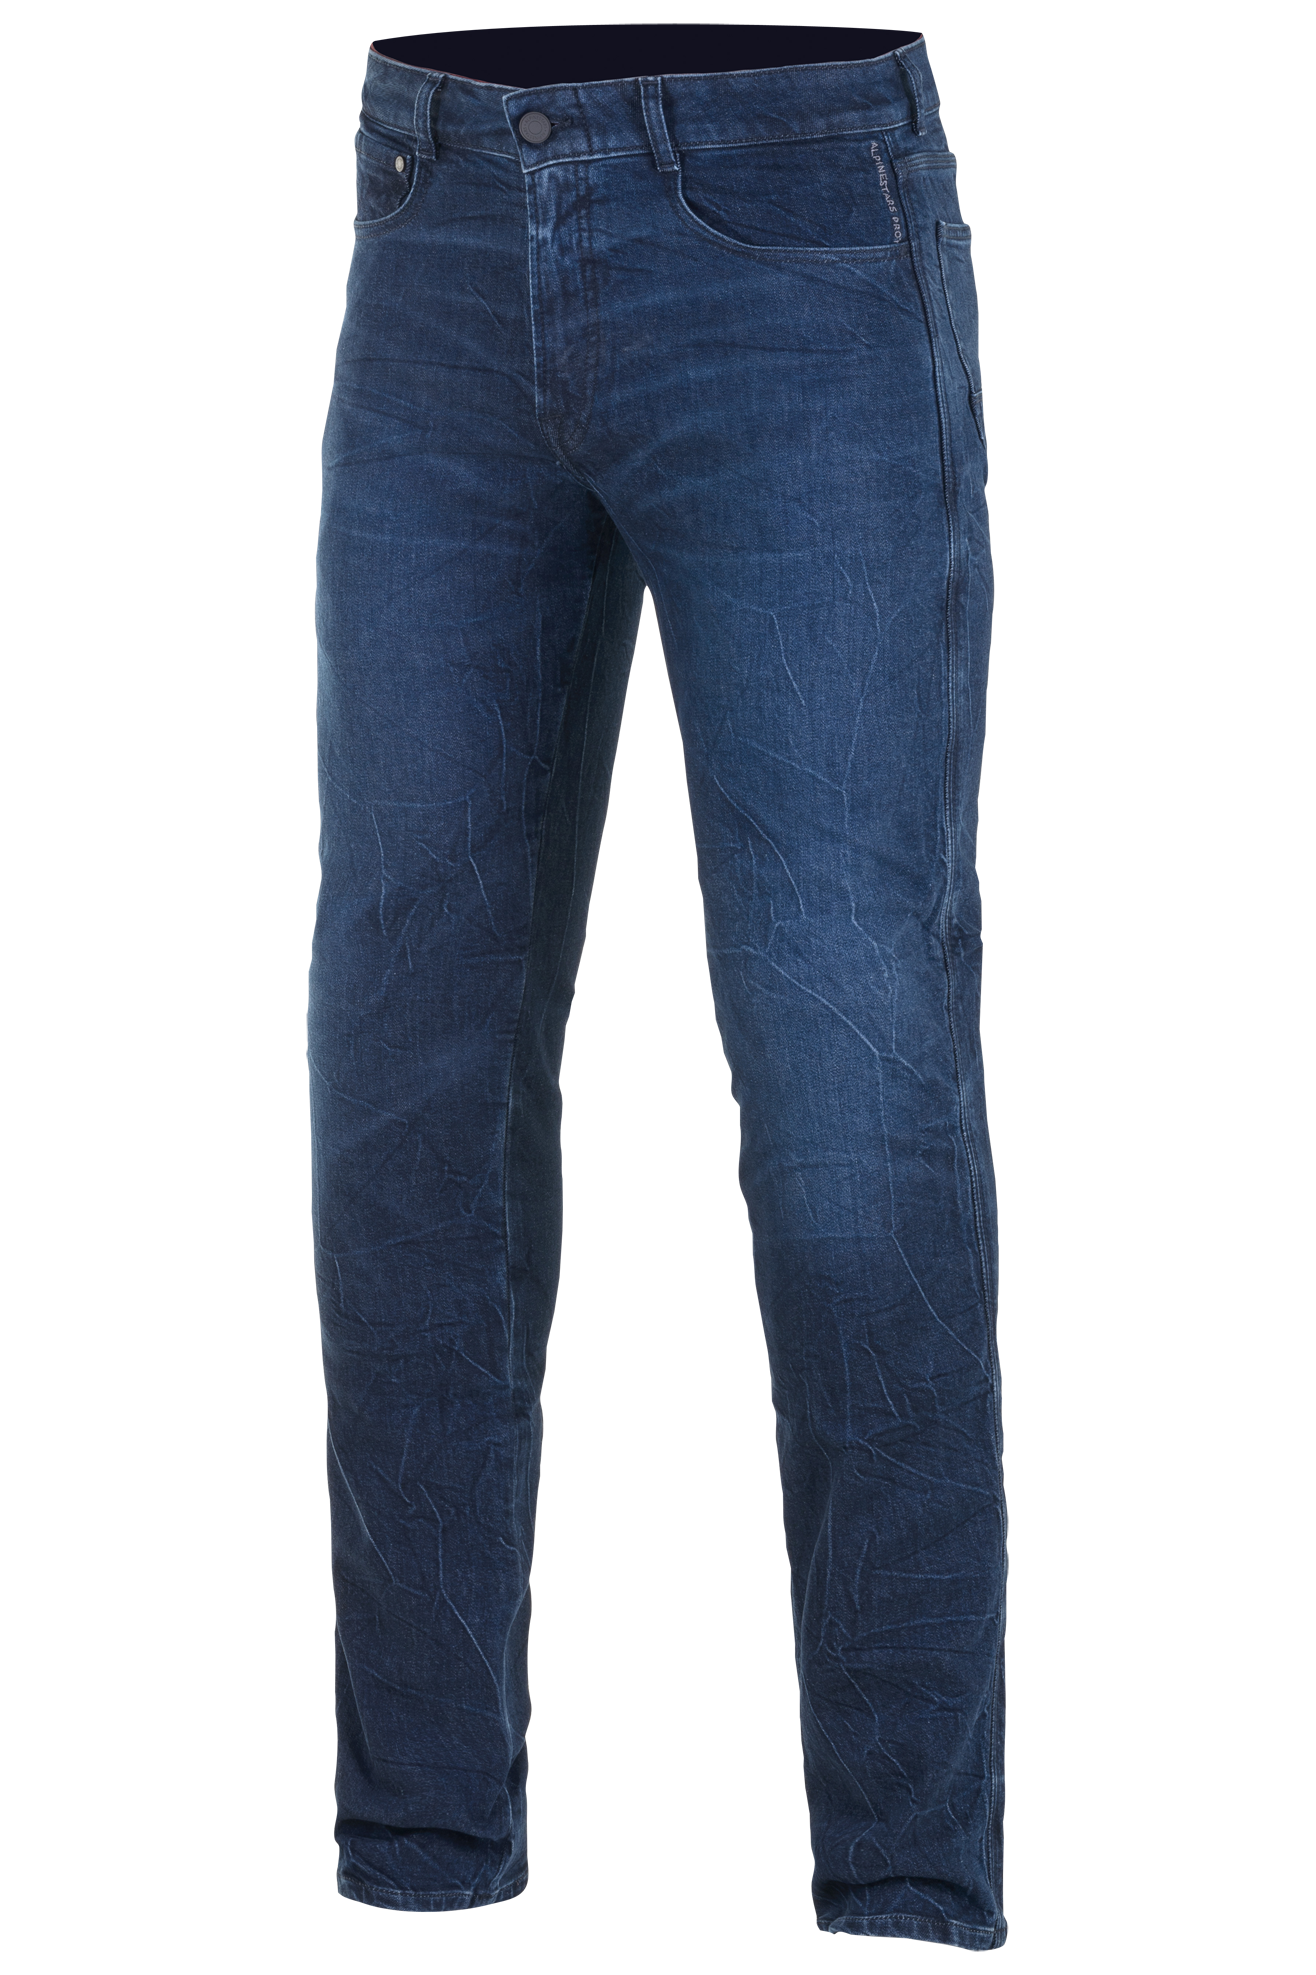 Alpinestars Pantalones de Moto  Copper V2 Plus Denim Corte Recto Azul Oscuro